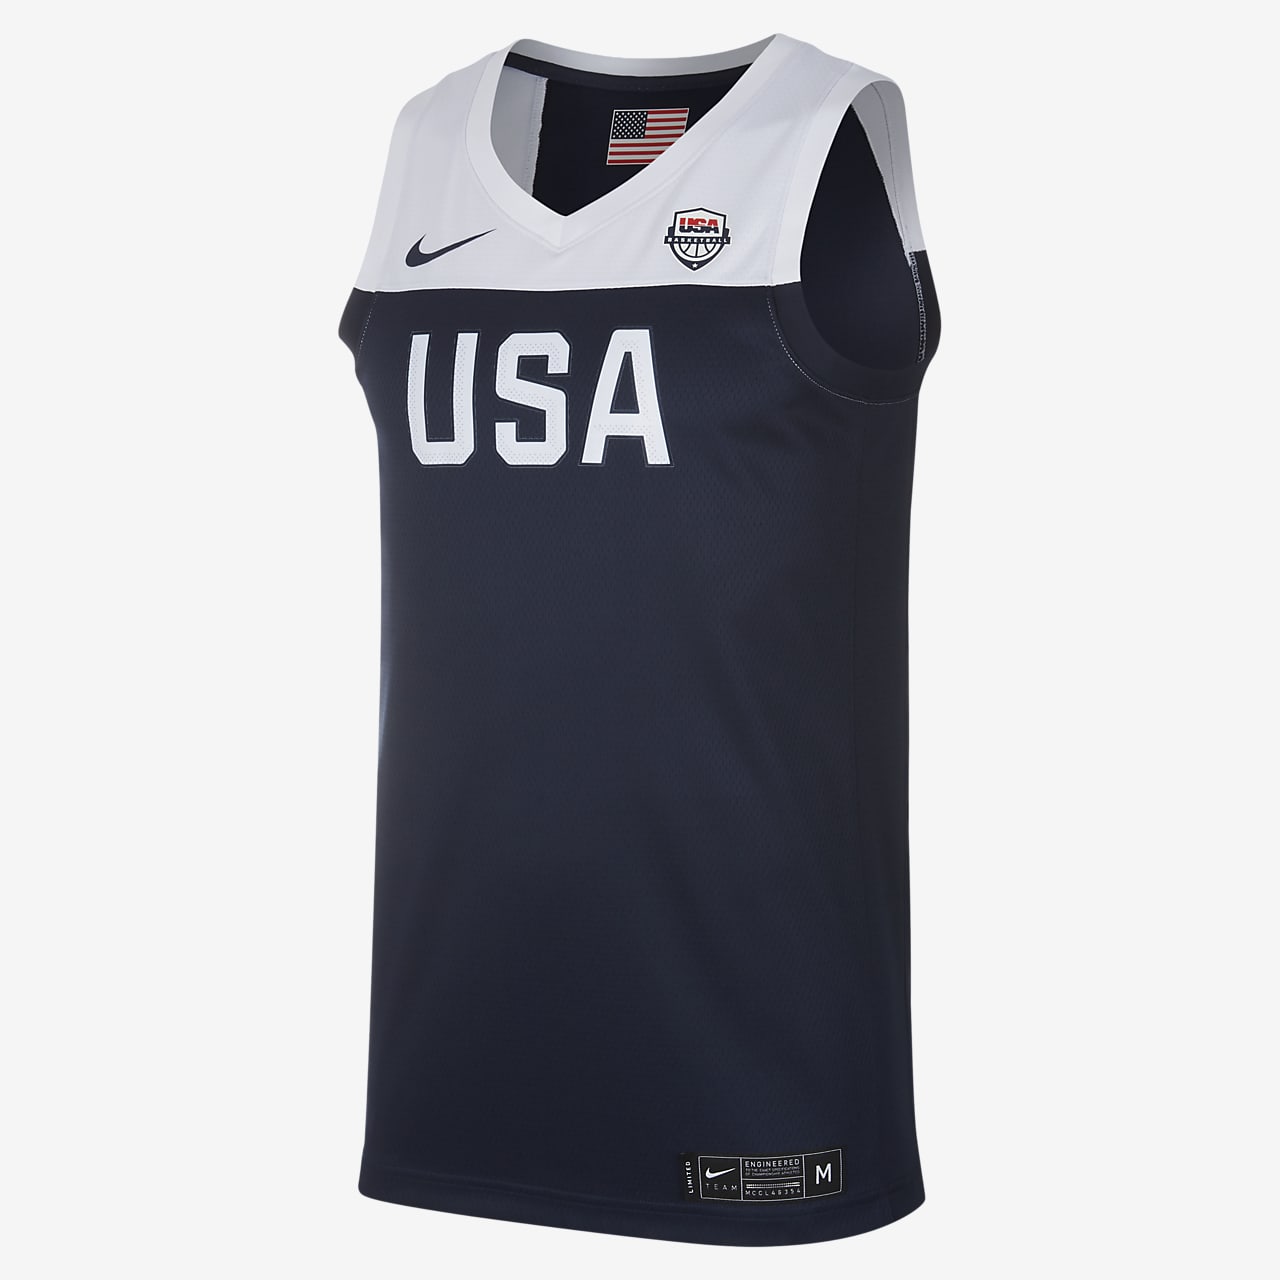 USA Nike (Road) Basketbaljersey voor heren